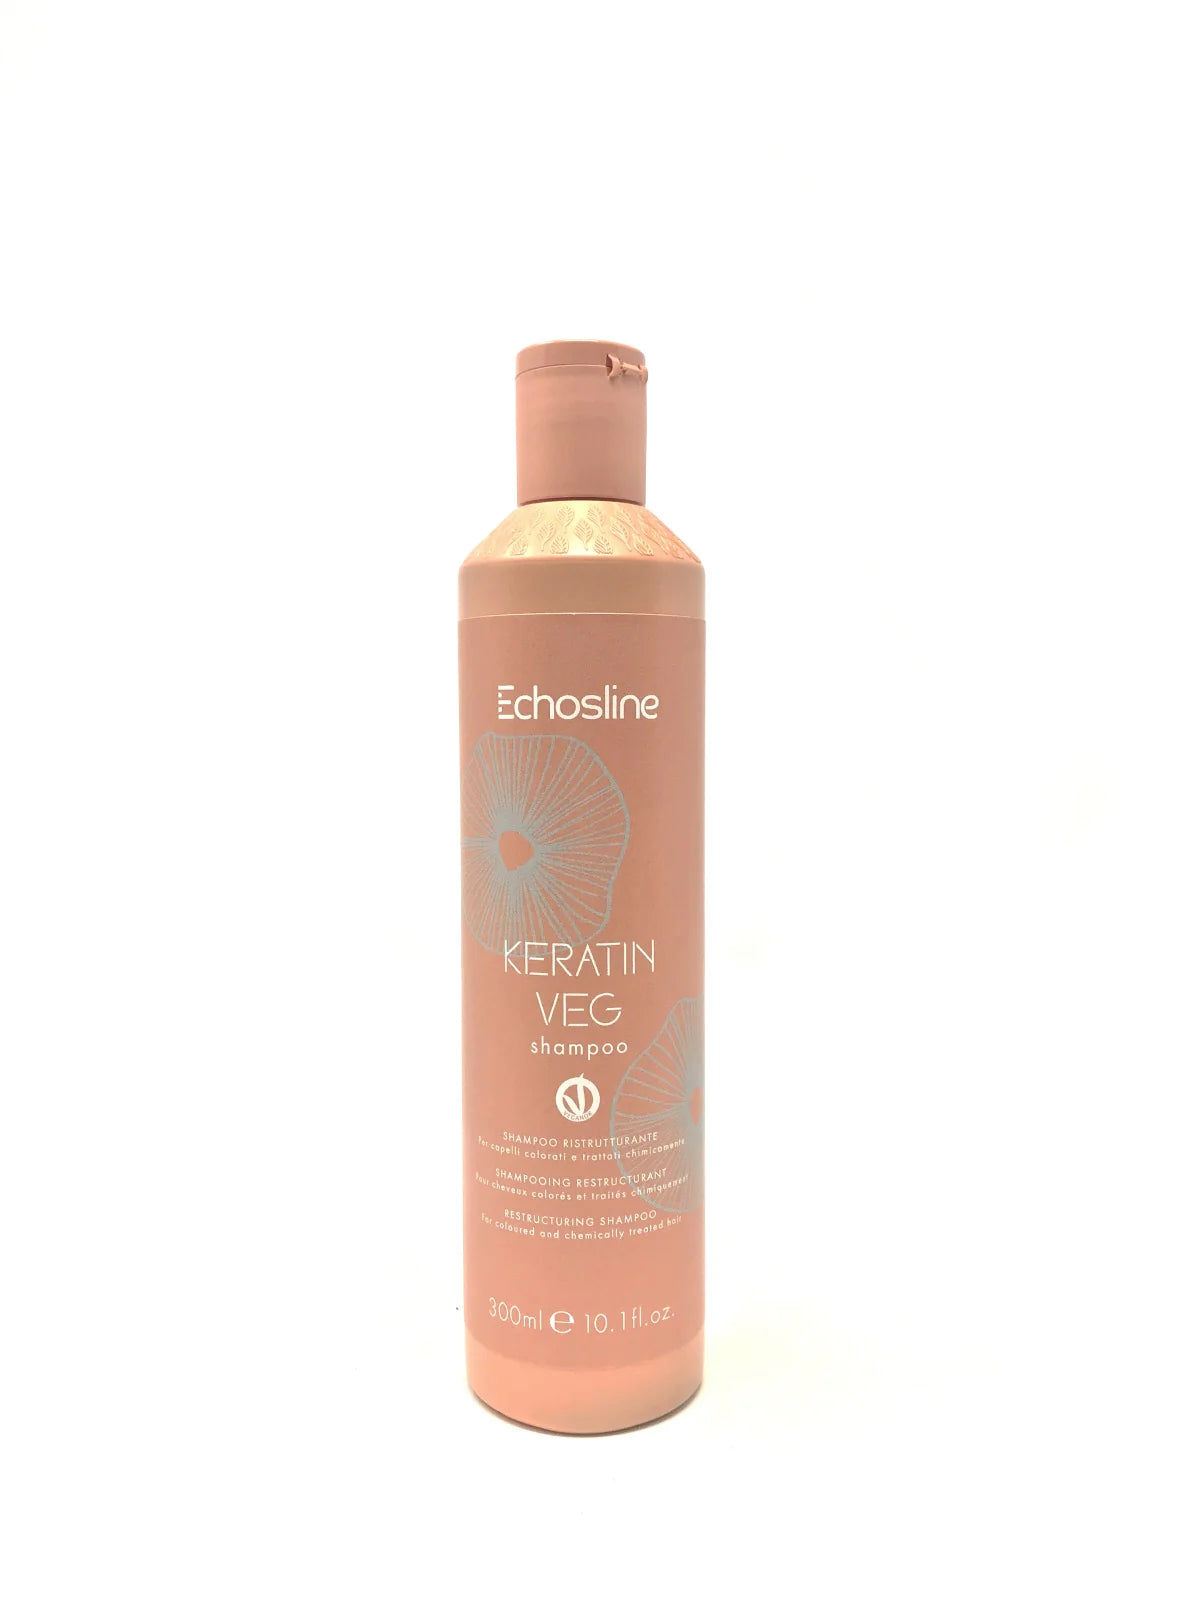 Echosline Shampoo Keratin Veg - Ristrutturante per capelli colorati e trattati chimicamente